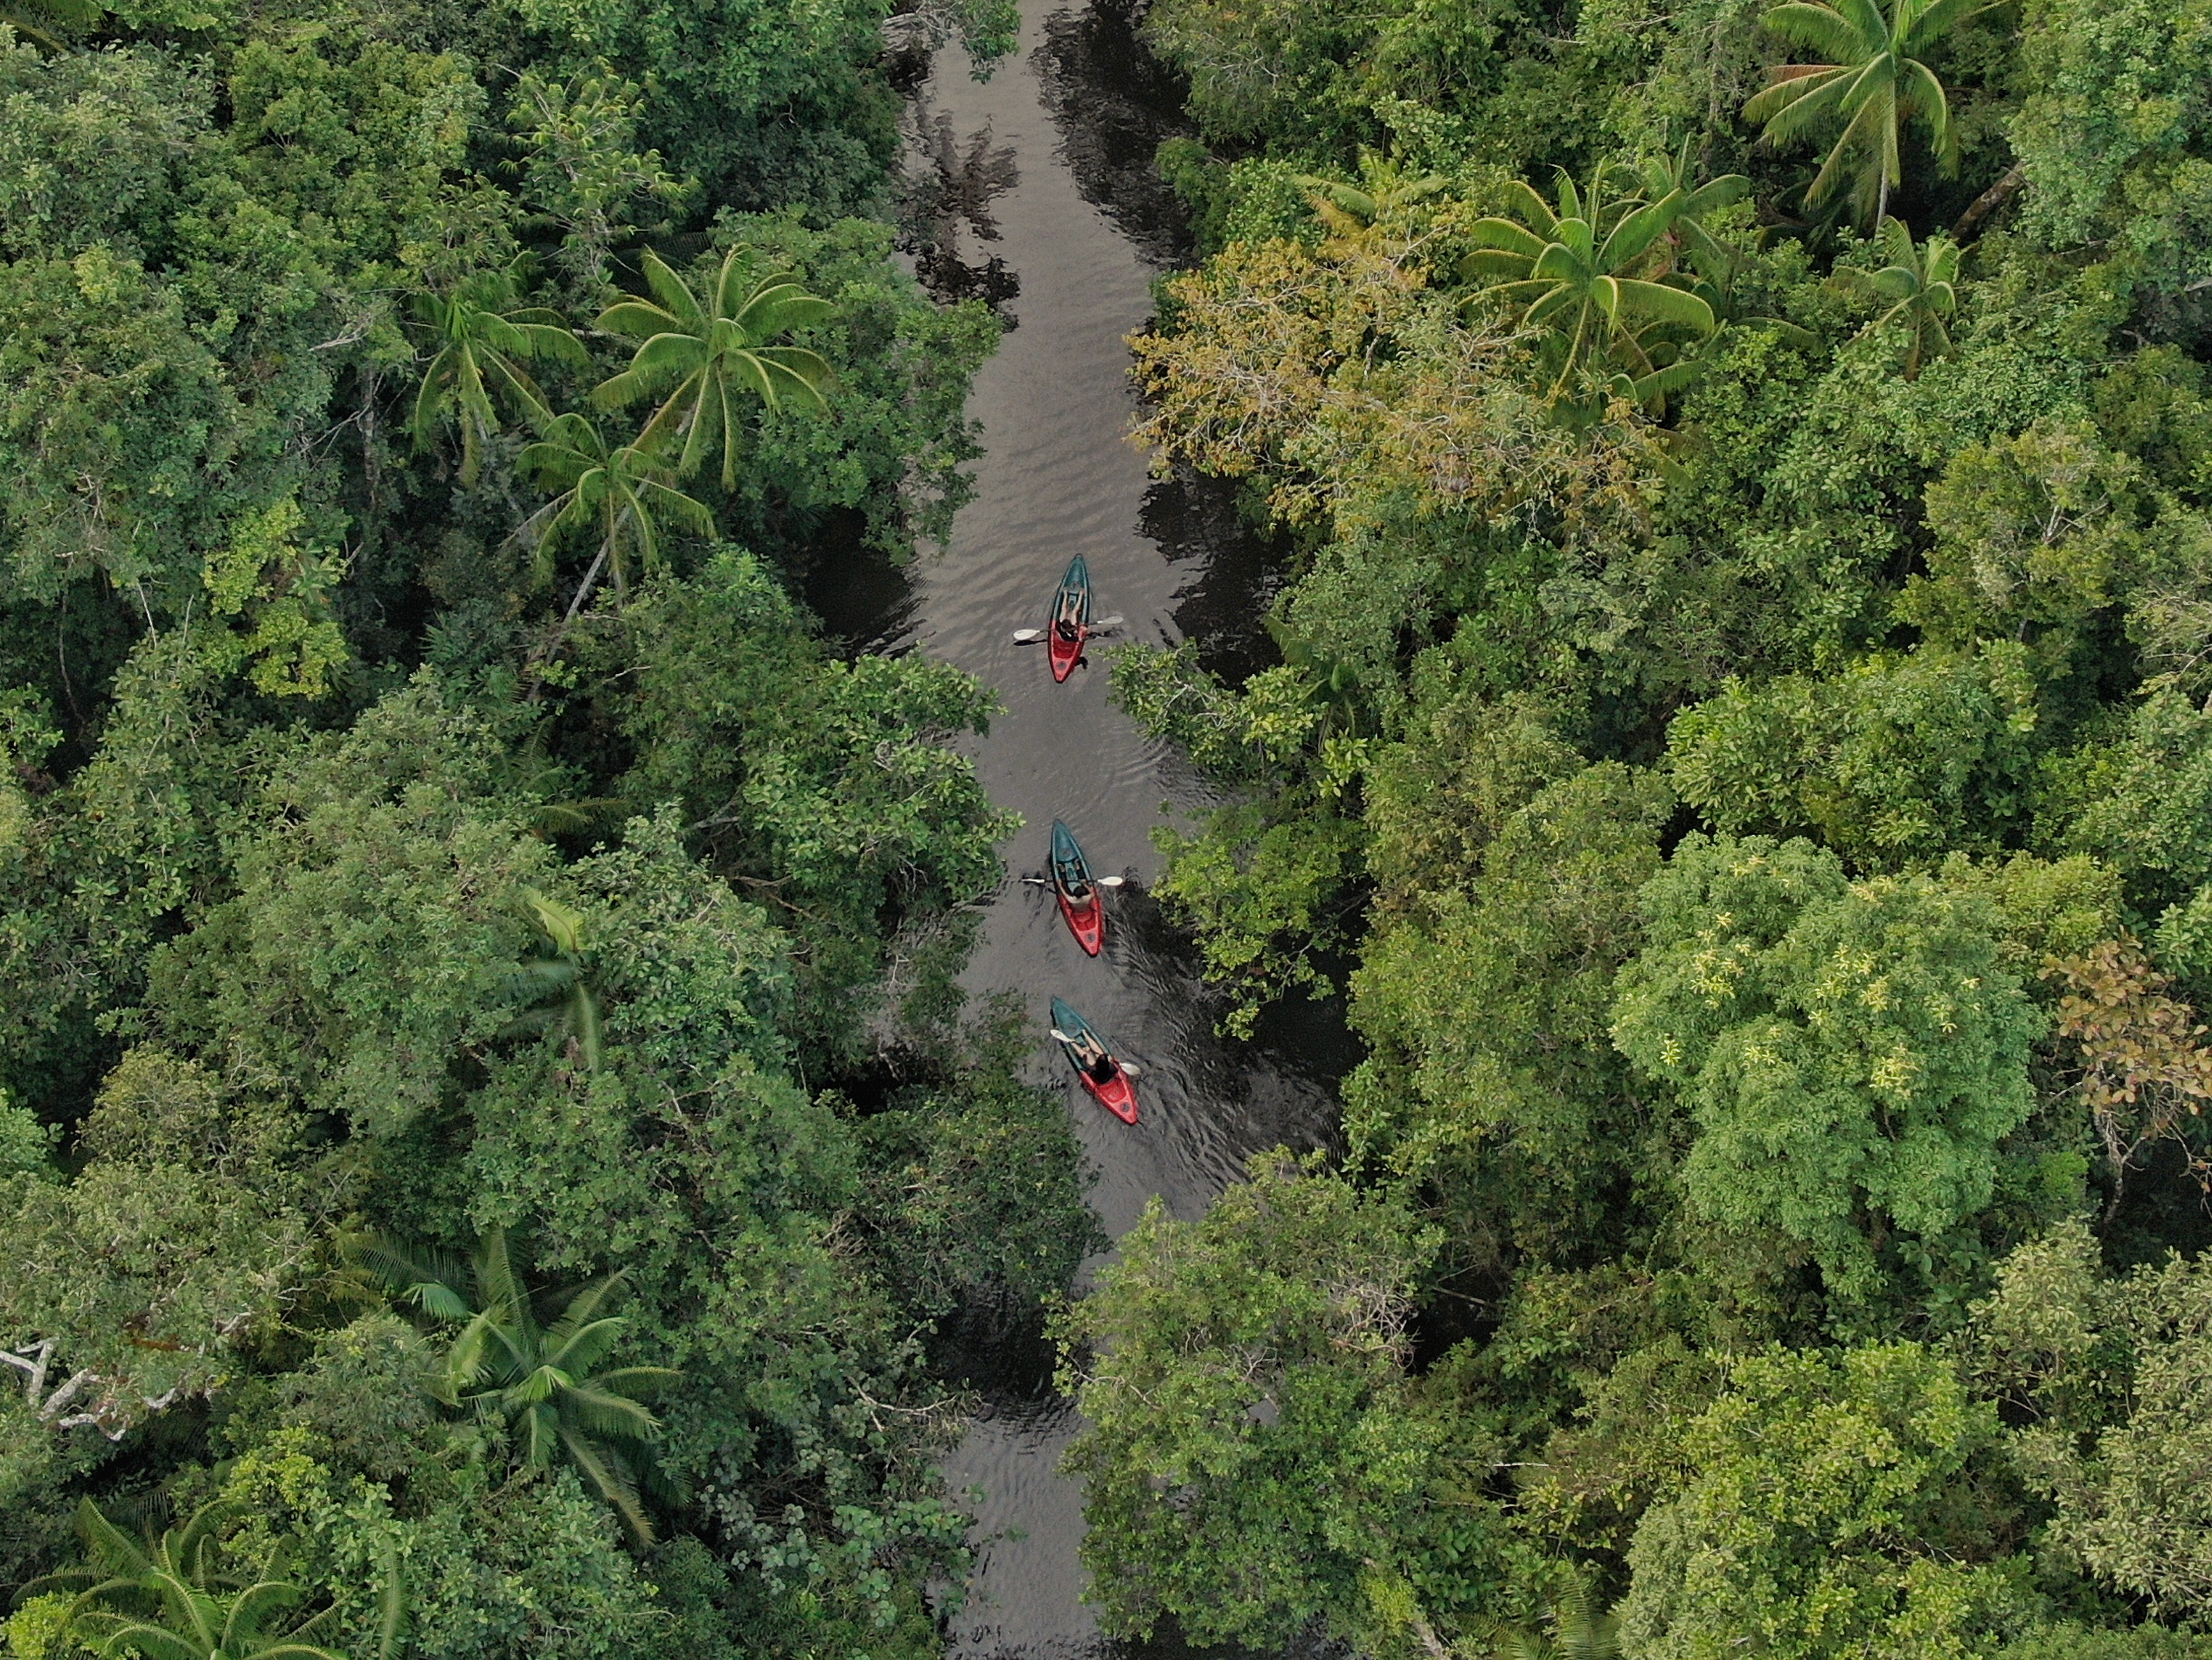 Botum Sakor National Park Wildlife hikes kayaking